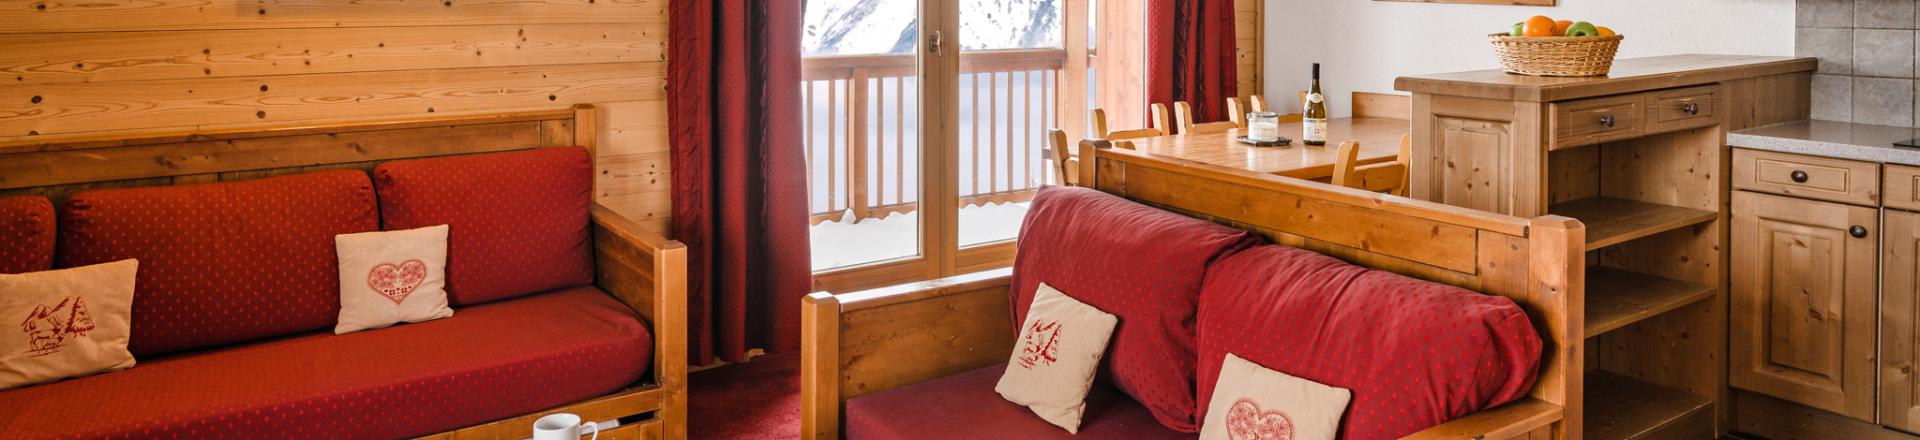 Rent in ski resort Résidence Lagrange les Hauts de Comborcière - La Toussuire - Bench seat